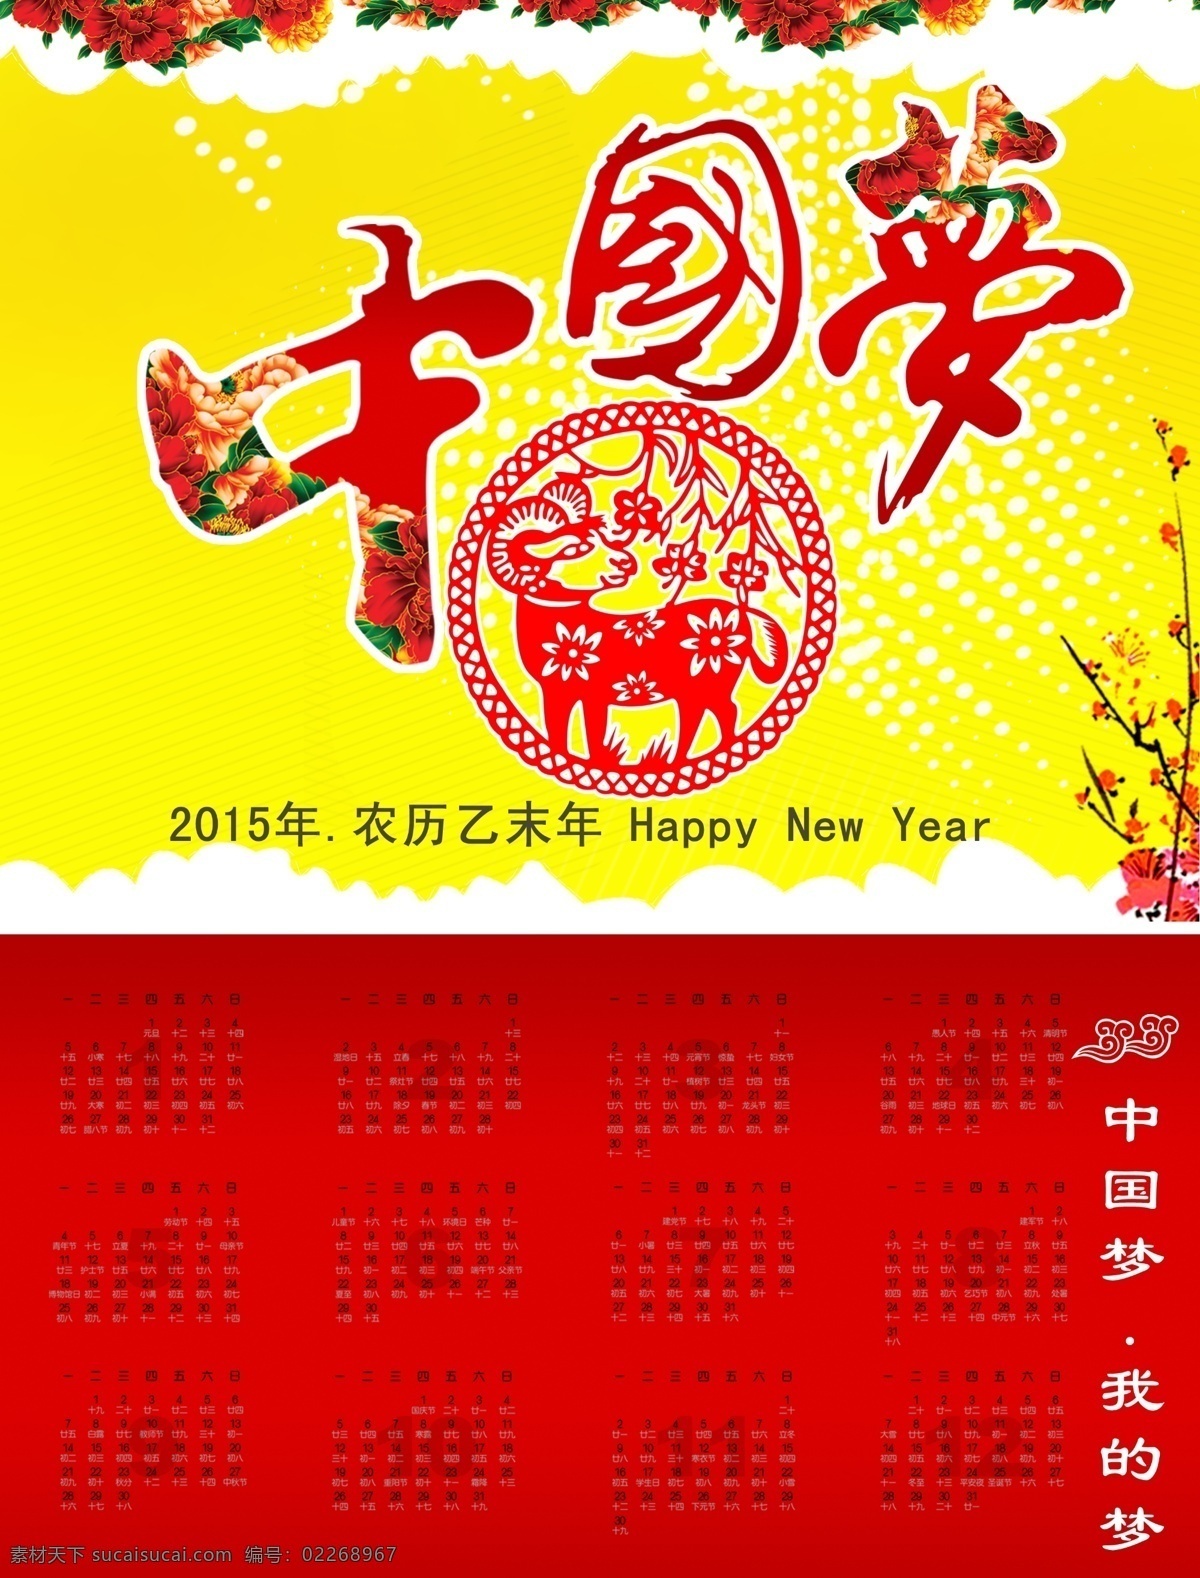 中国 梦 2015 羊年 新年 挂历 中国梦 节日素材